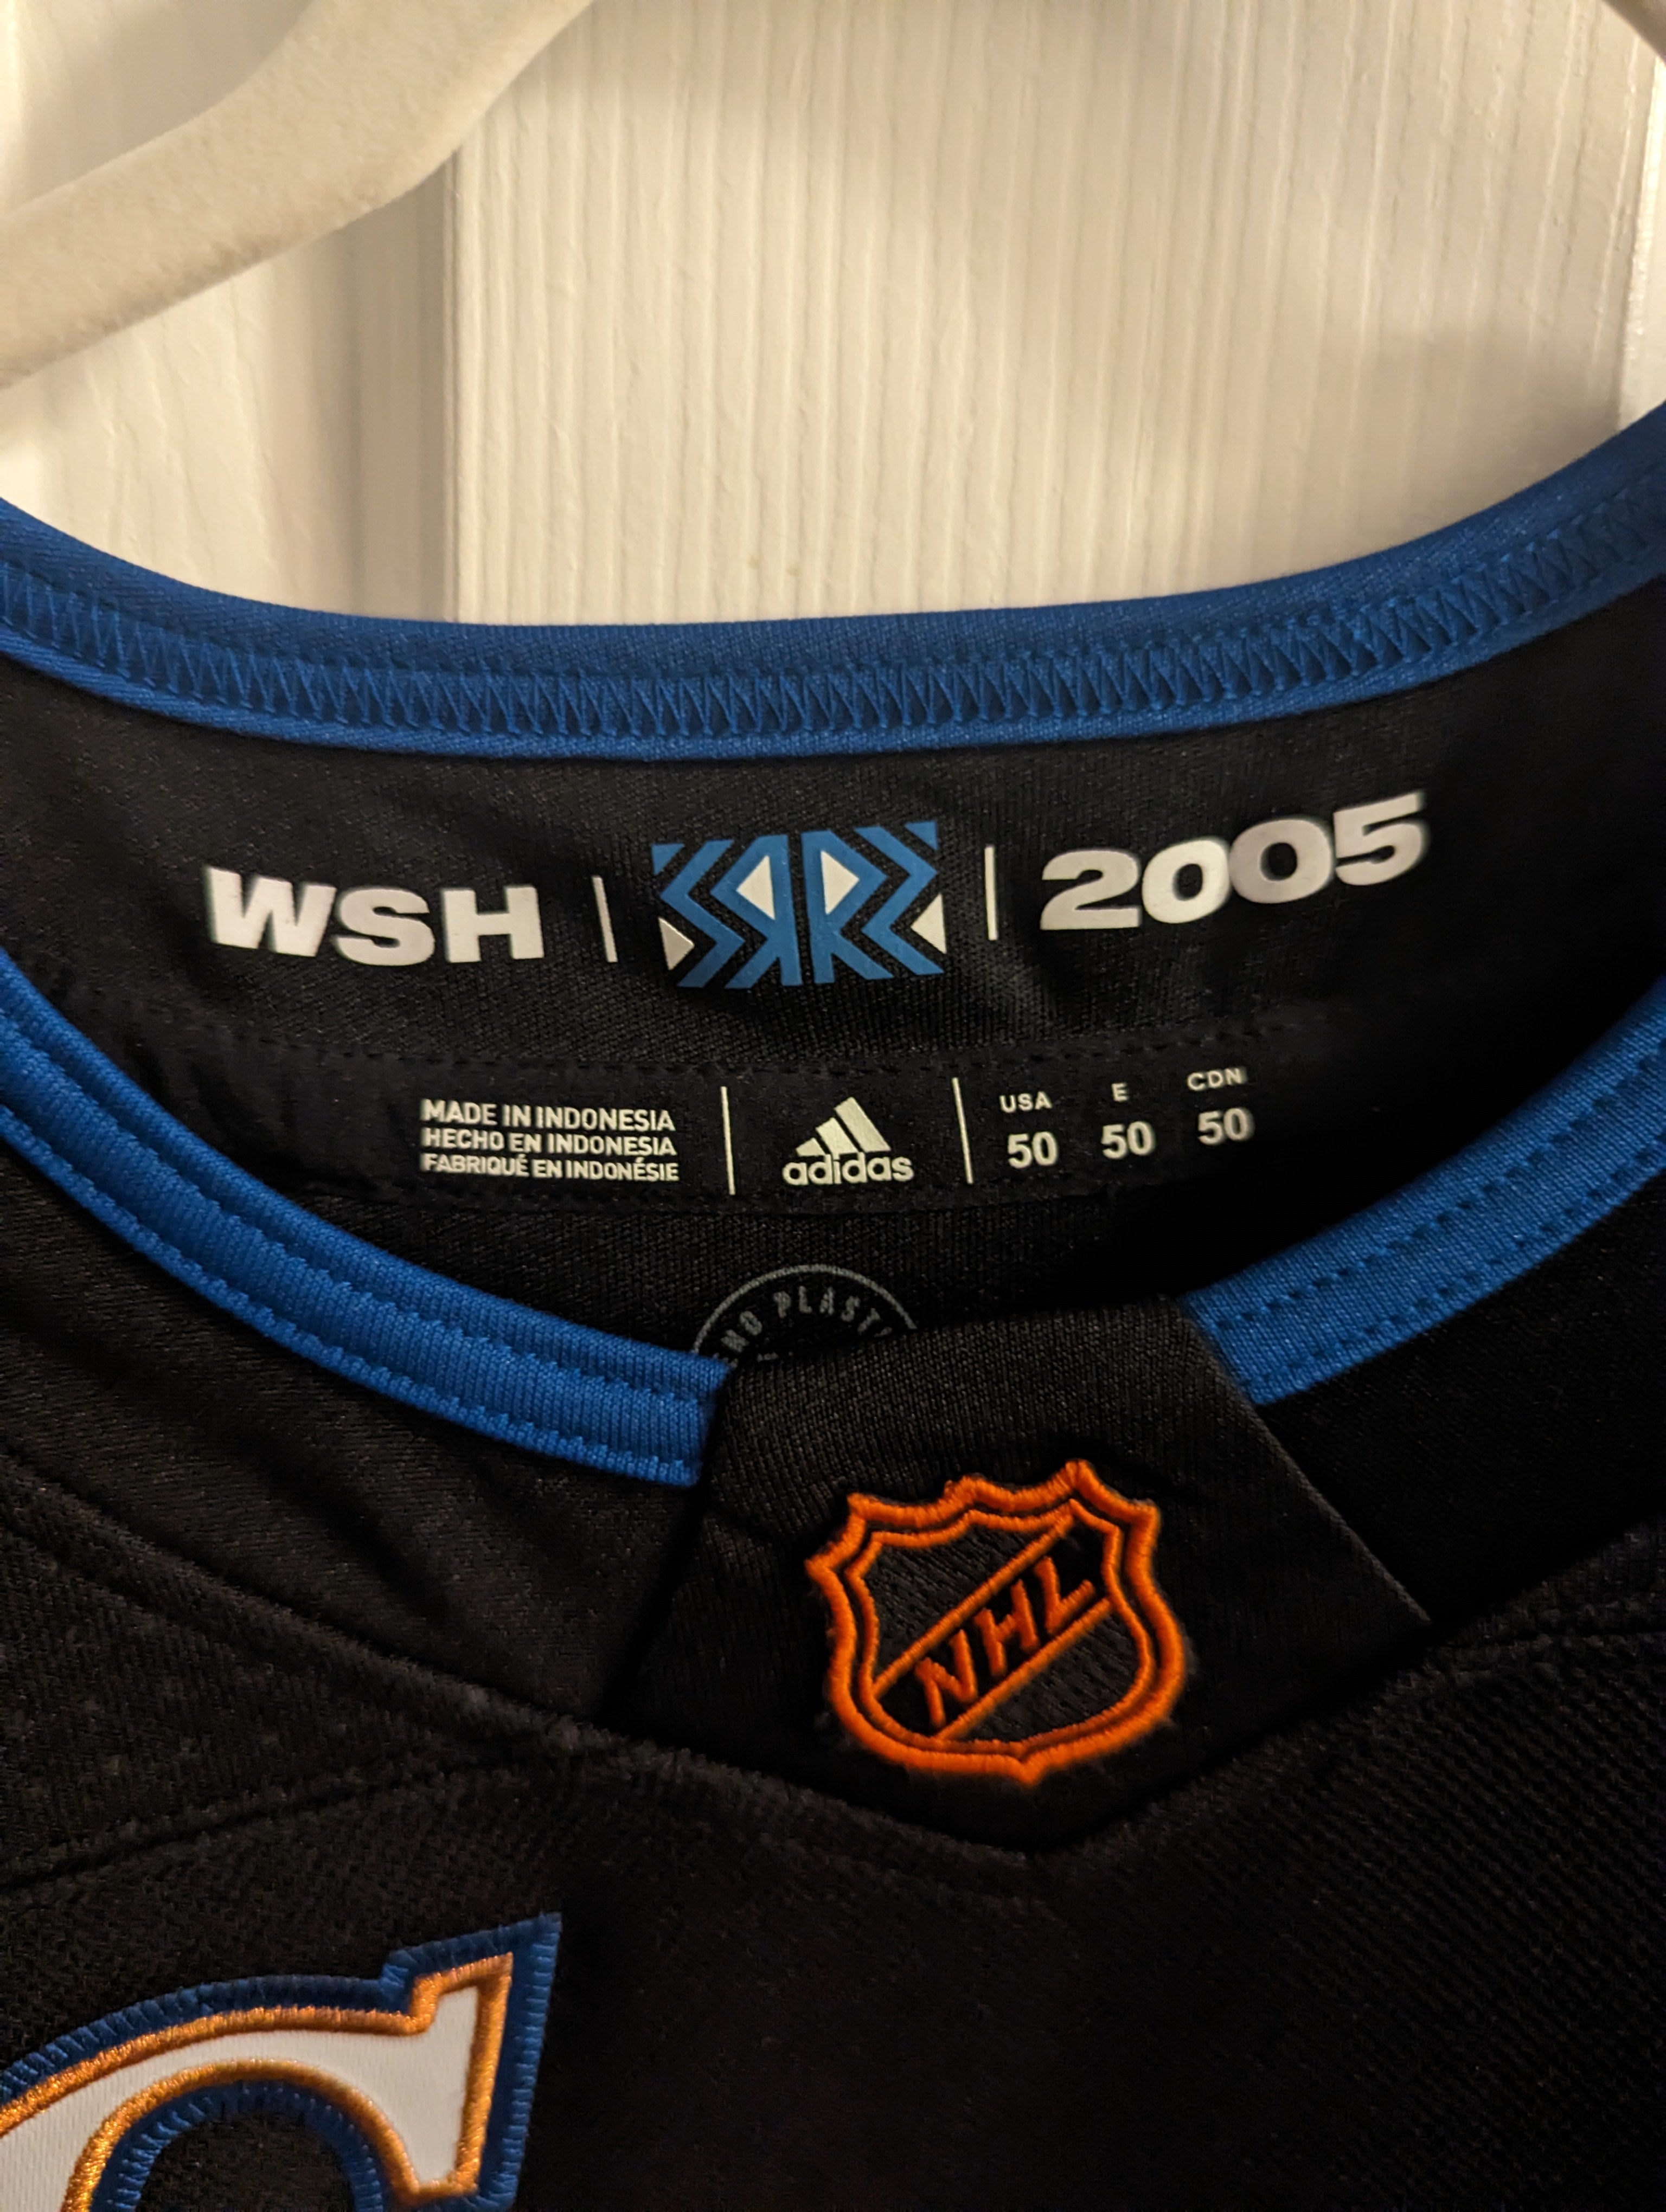 Ovechkin Washington Capitals Reverse Retro 2.0 Adidas Jersey NWT, Hockey, Calgary